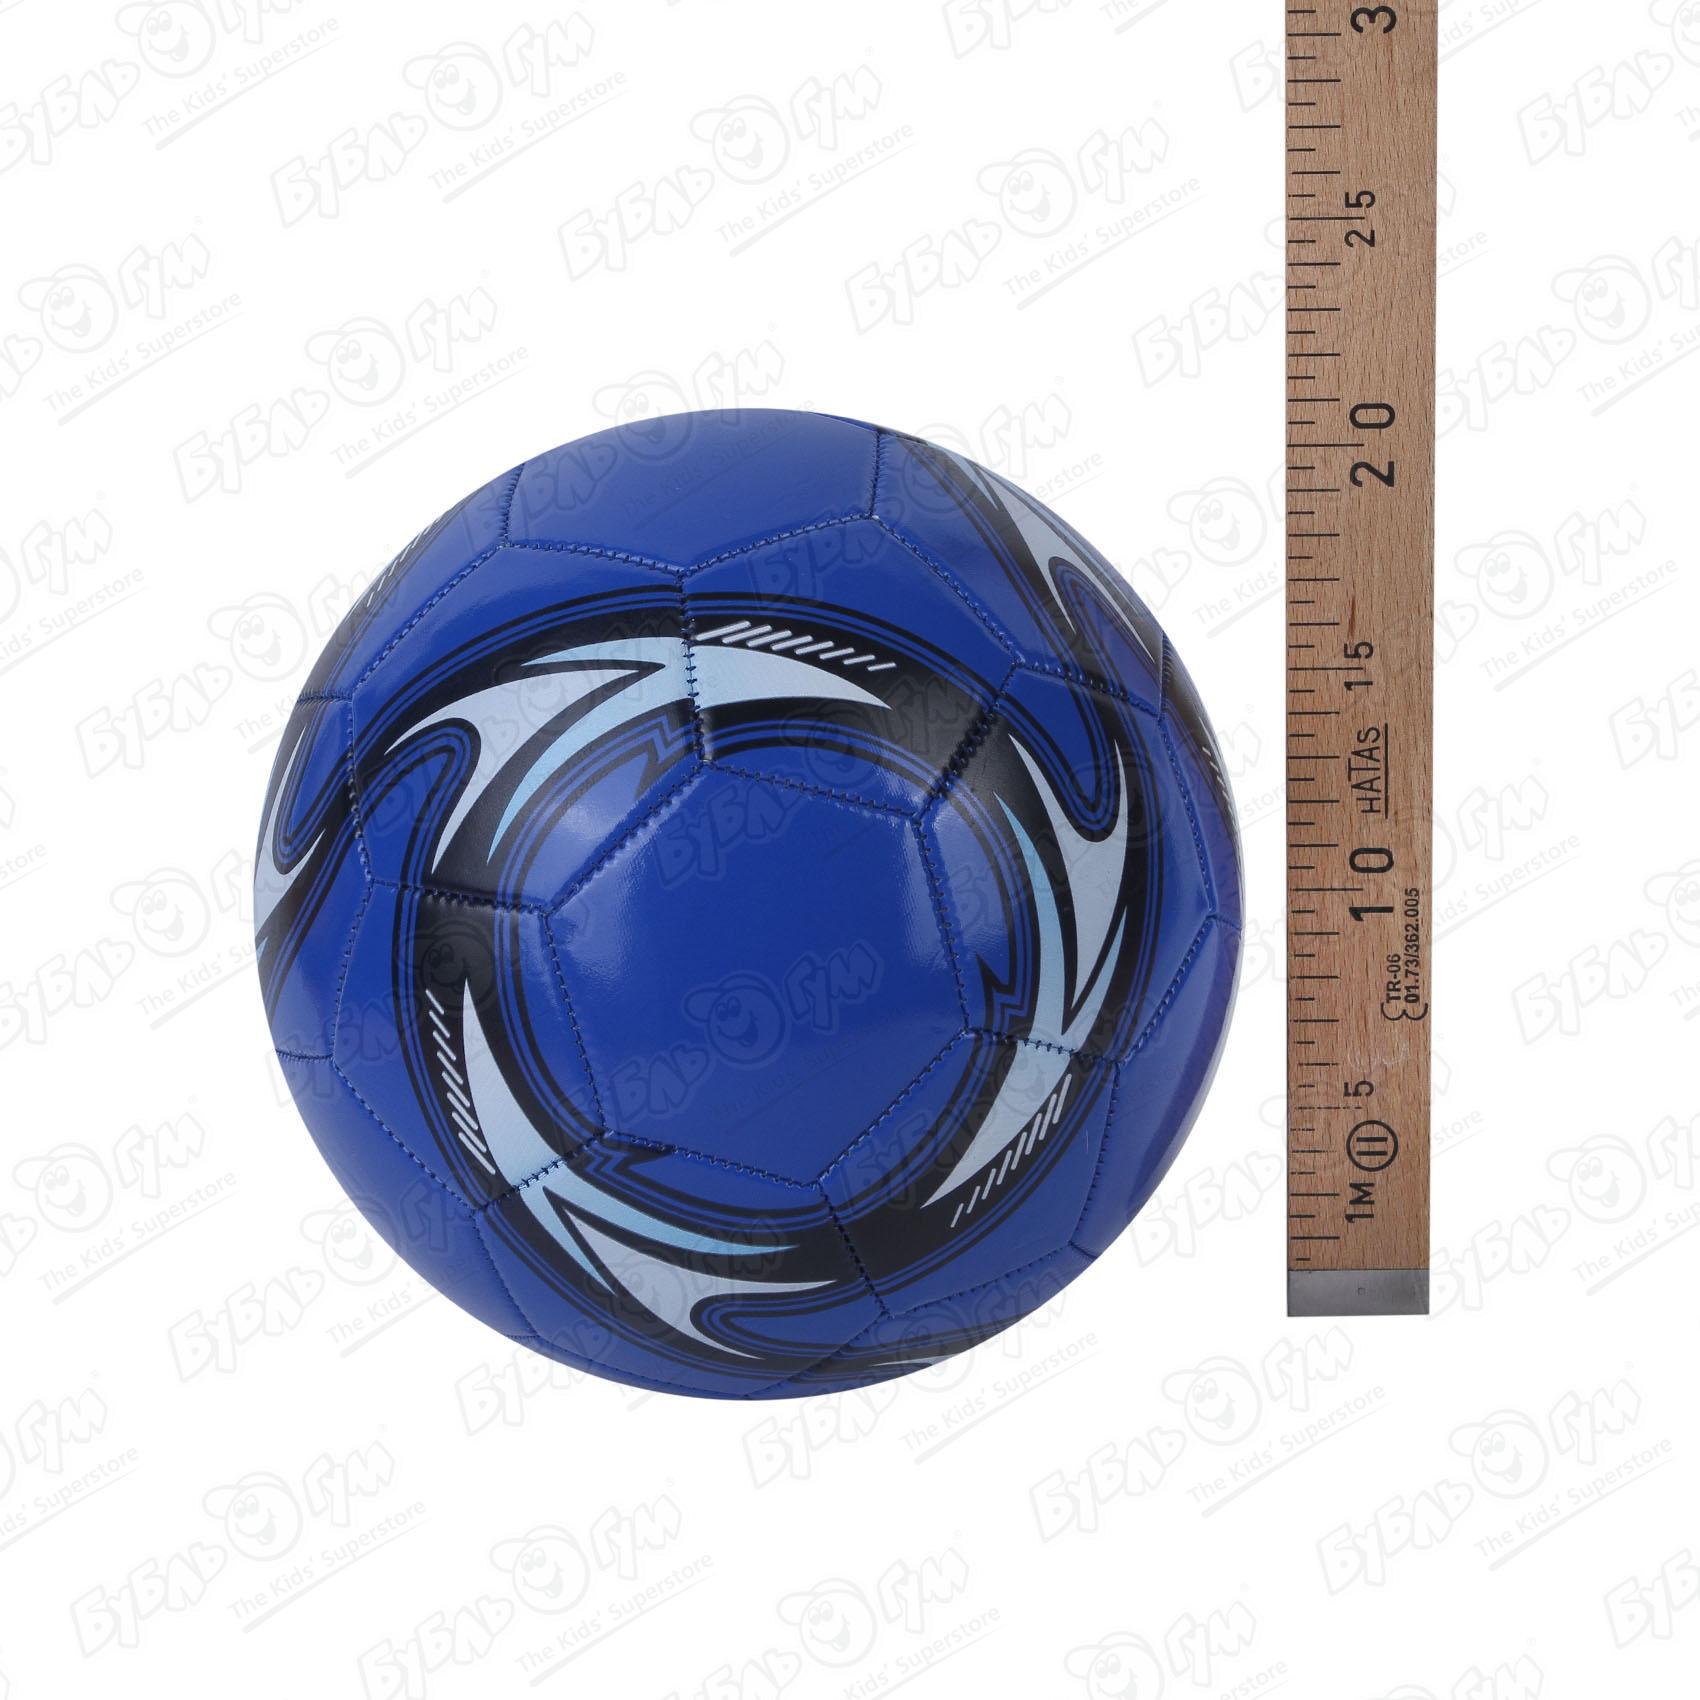 Мяч футбольный размер 5 в ассортименте - фото 3